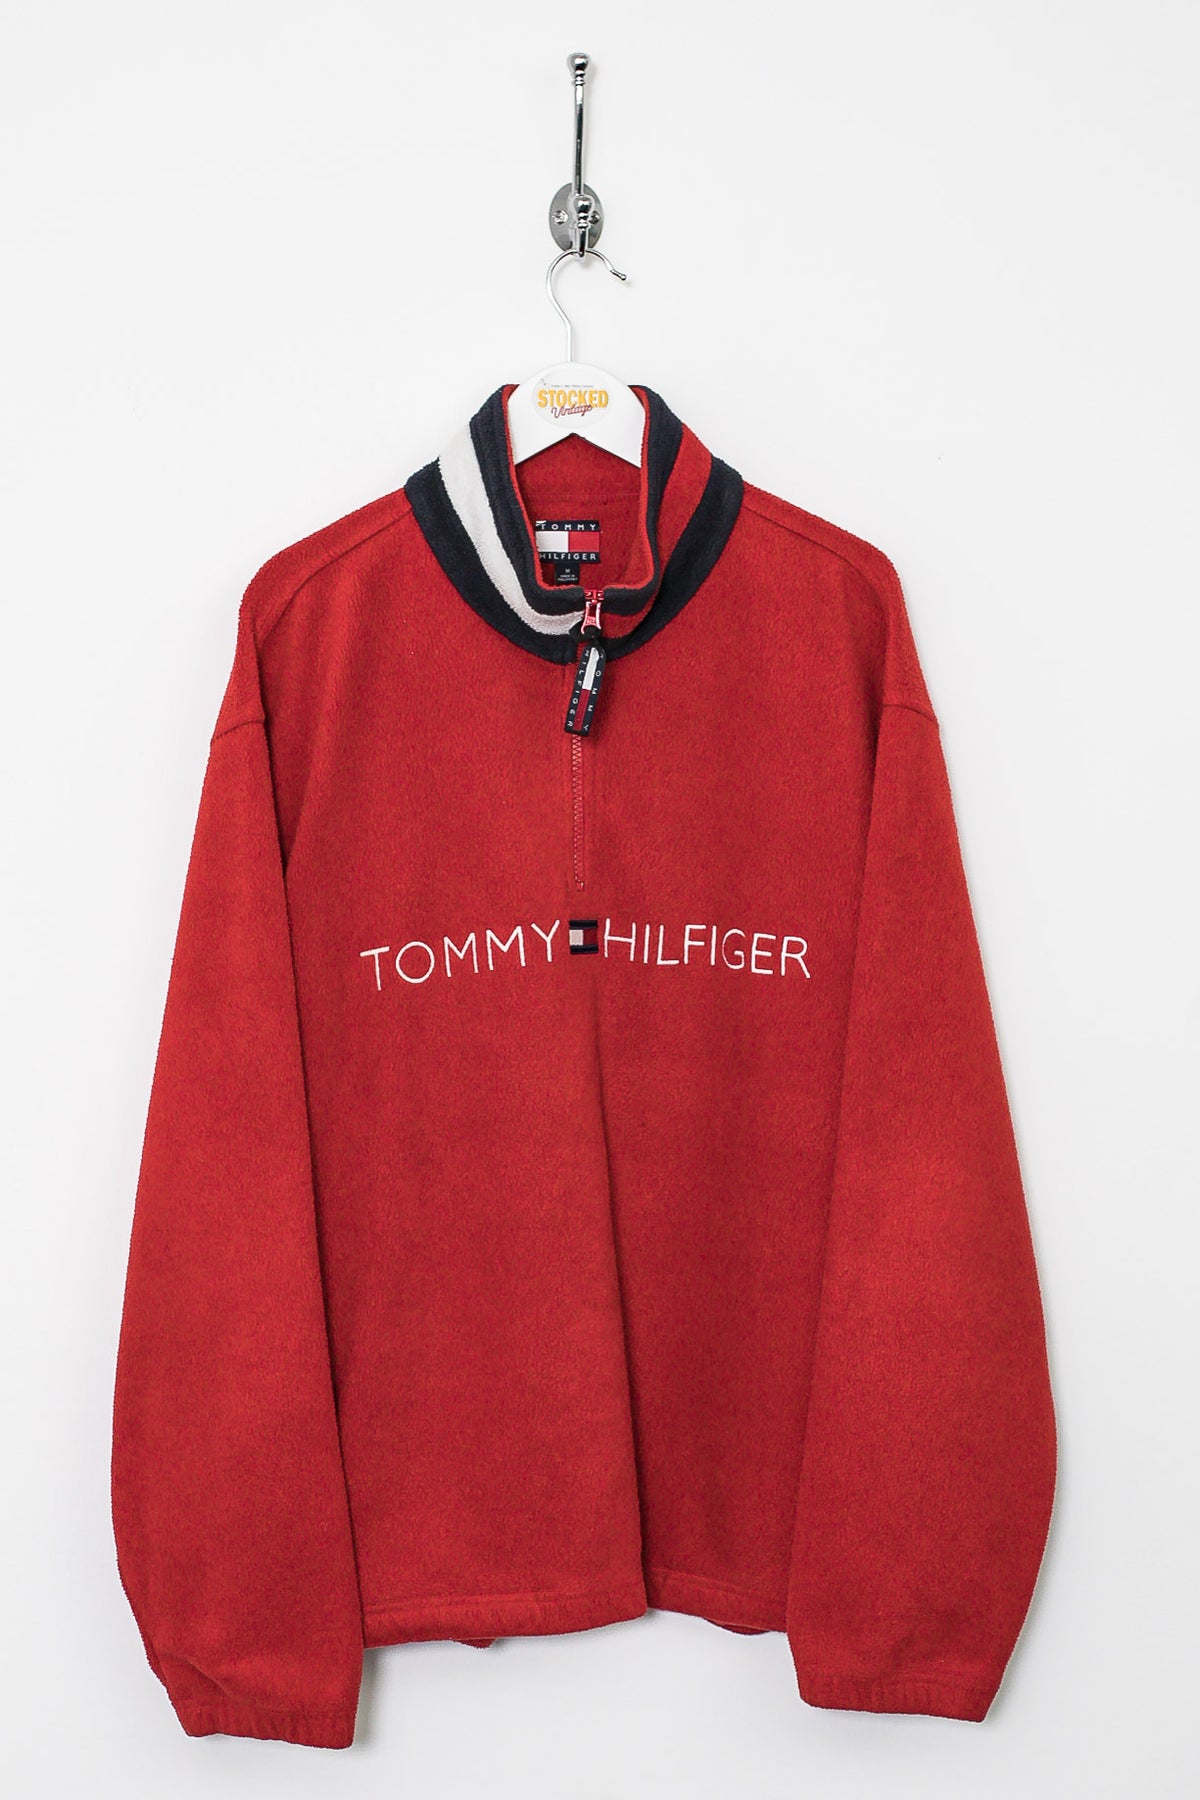 90s Tommy Hilfiger 1/4 Zip Fleece (M)